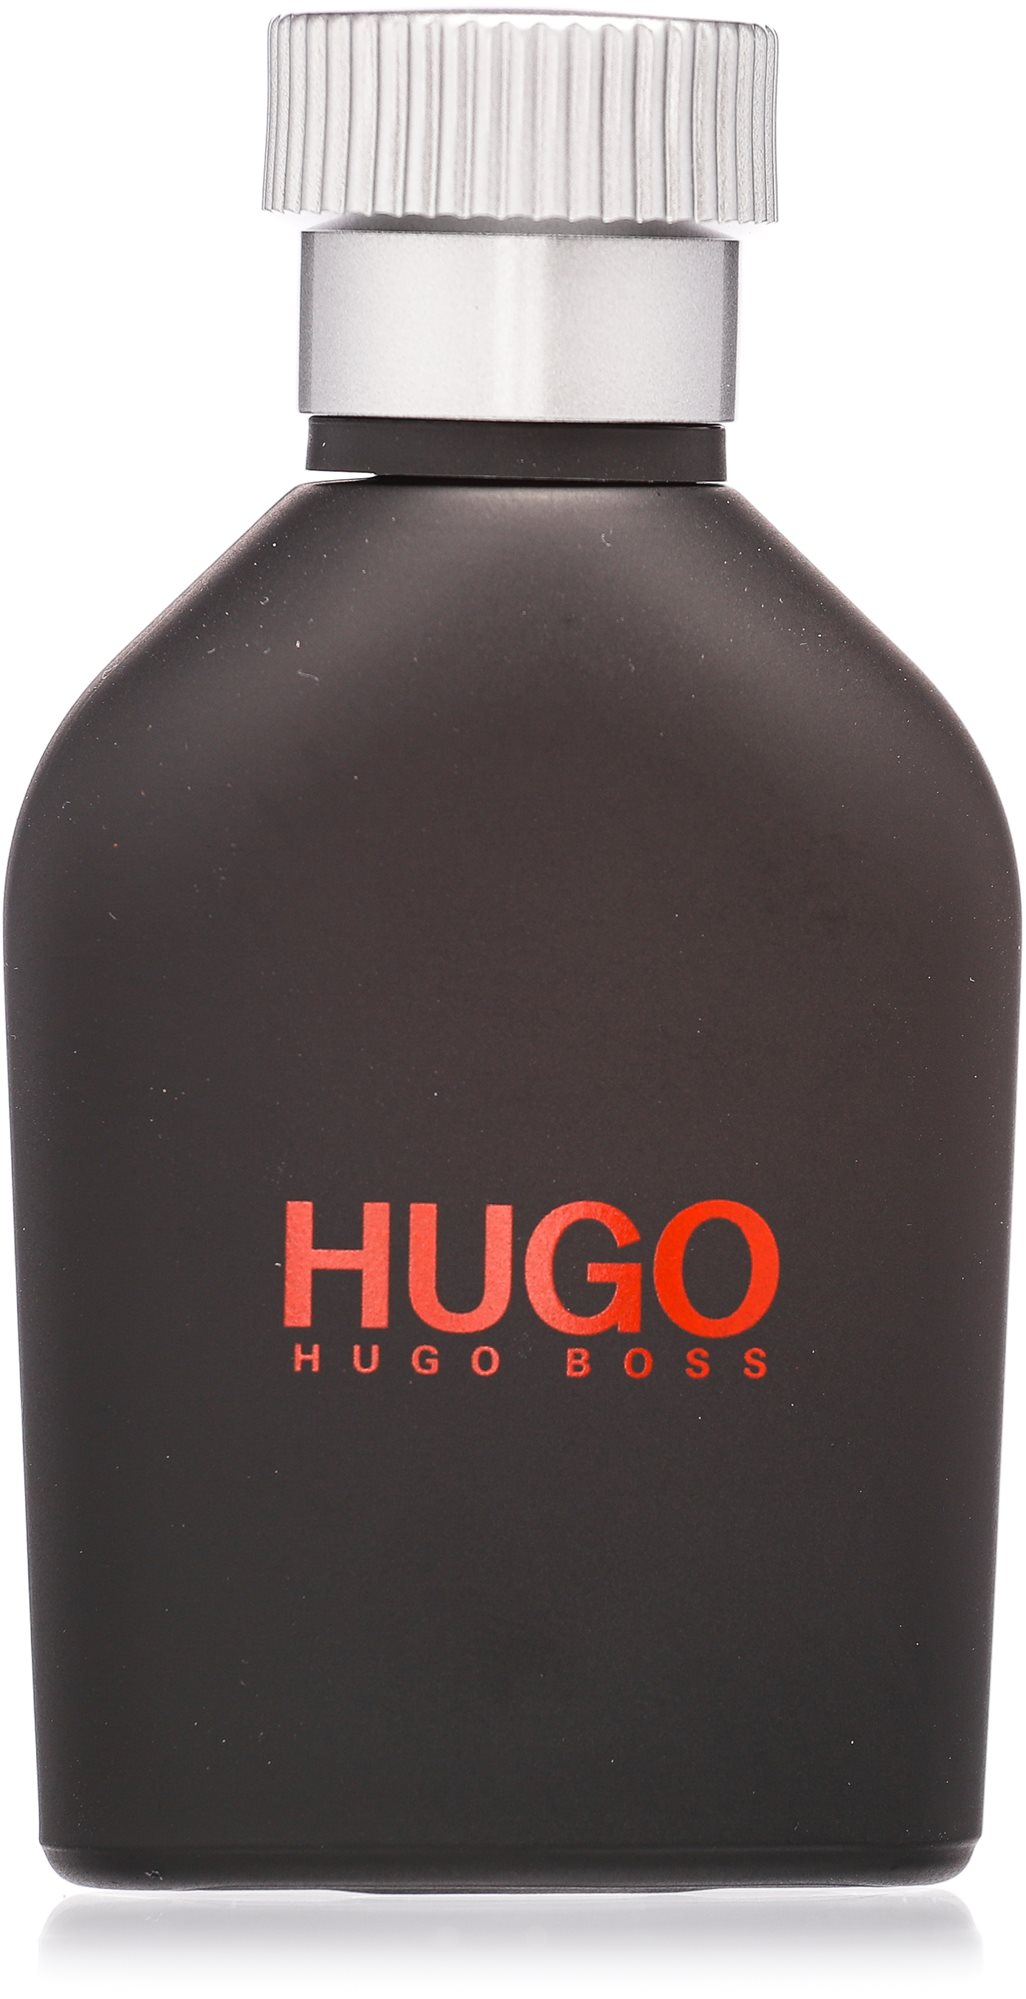 HUGO BOSS Hugo Just Different EdT 40 ml